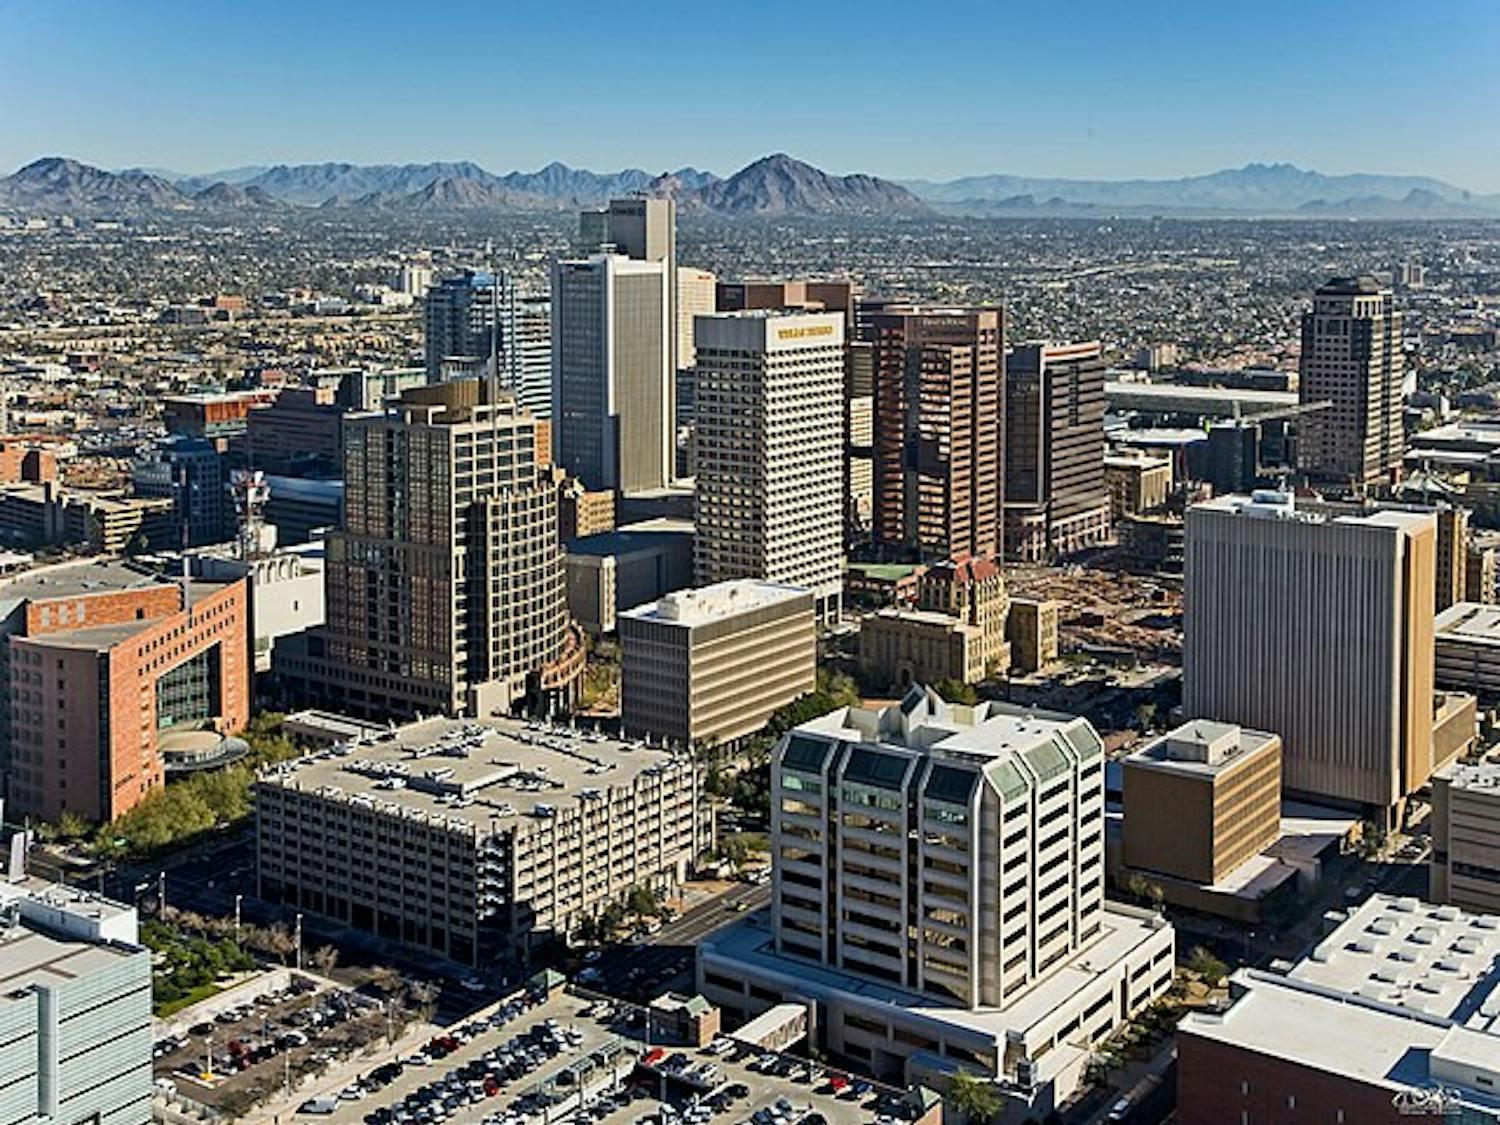 Downtown_Phoenix_Aerial_Looking_Northeast.jpeg